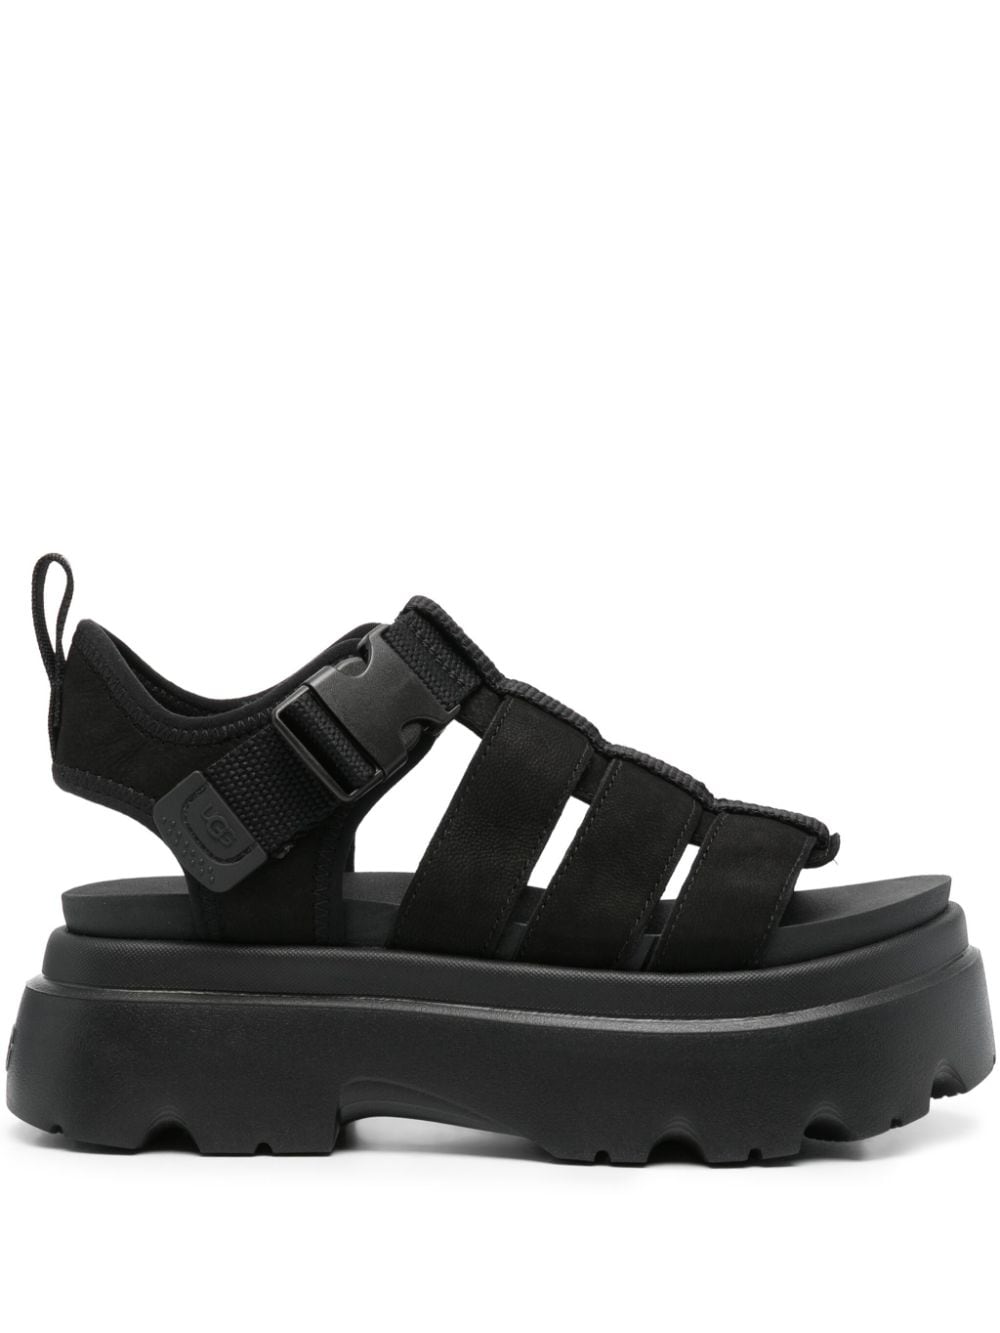 UGG Cora leather sandals - Black von UGG